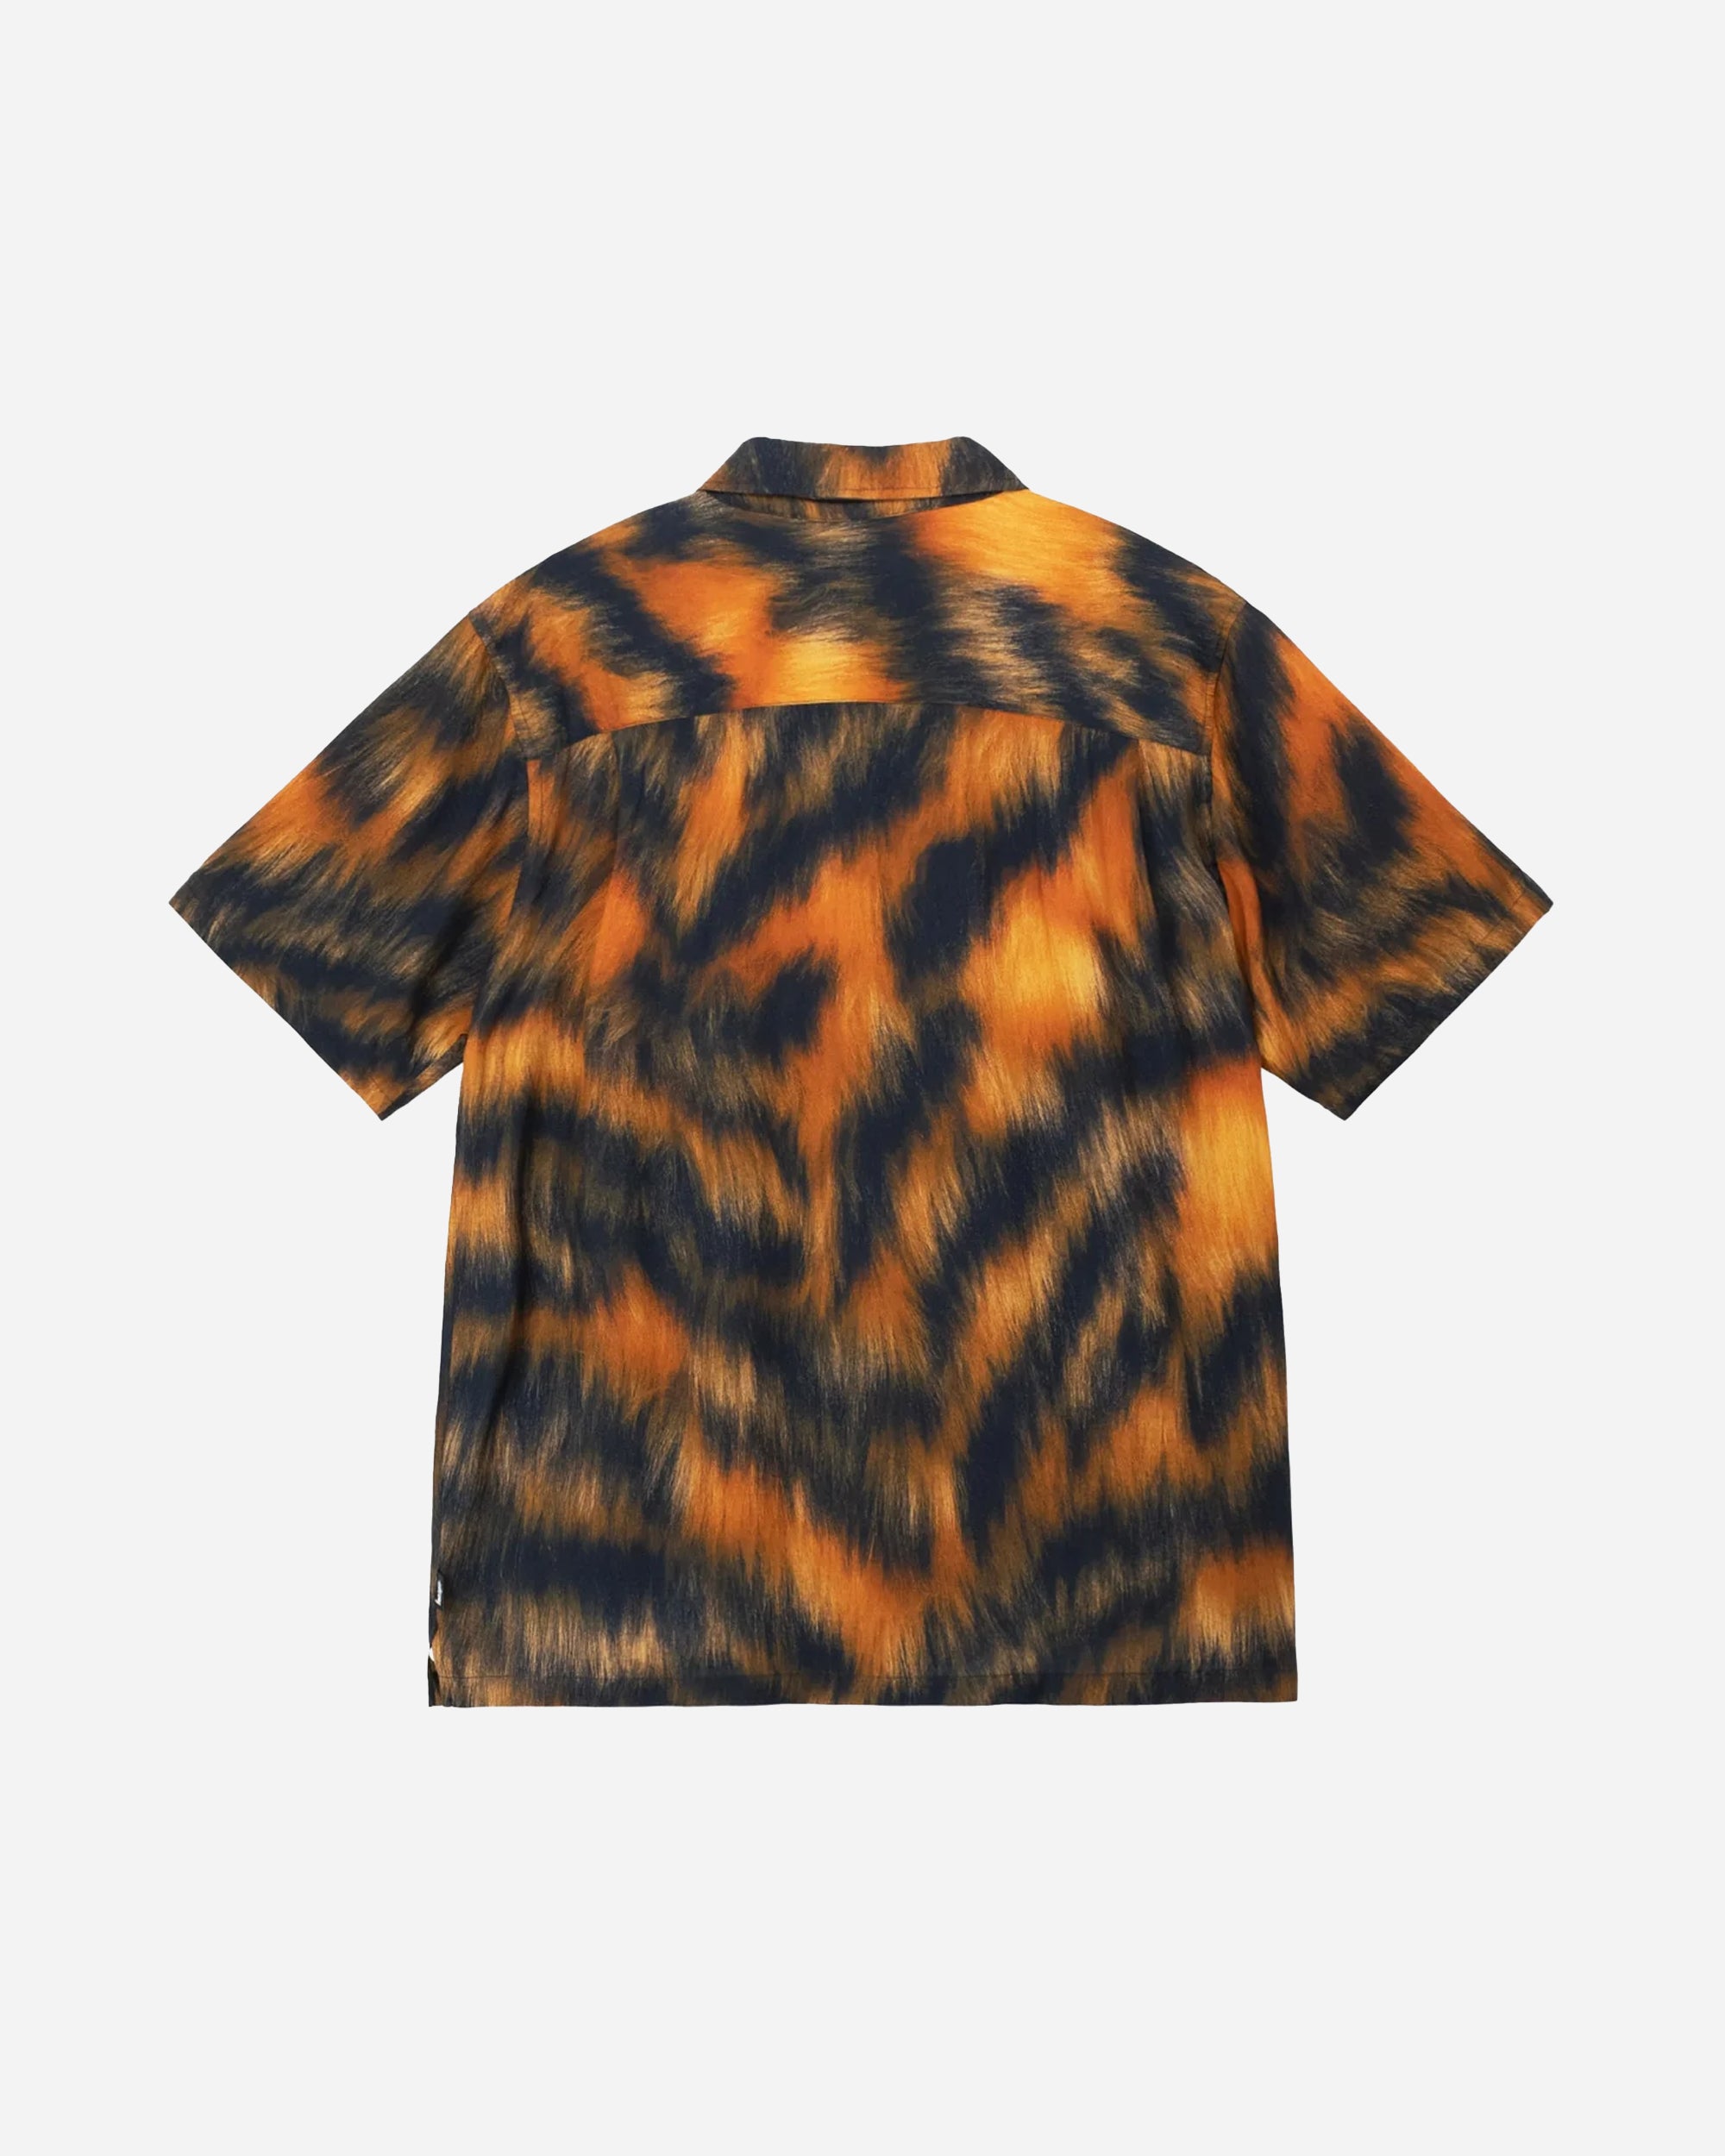 STUSSY Fur Print Shirt Tiger 1110282-924